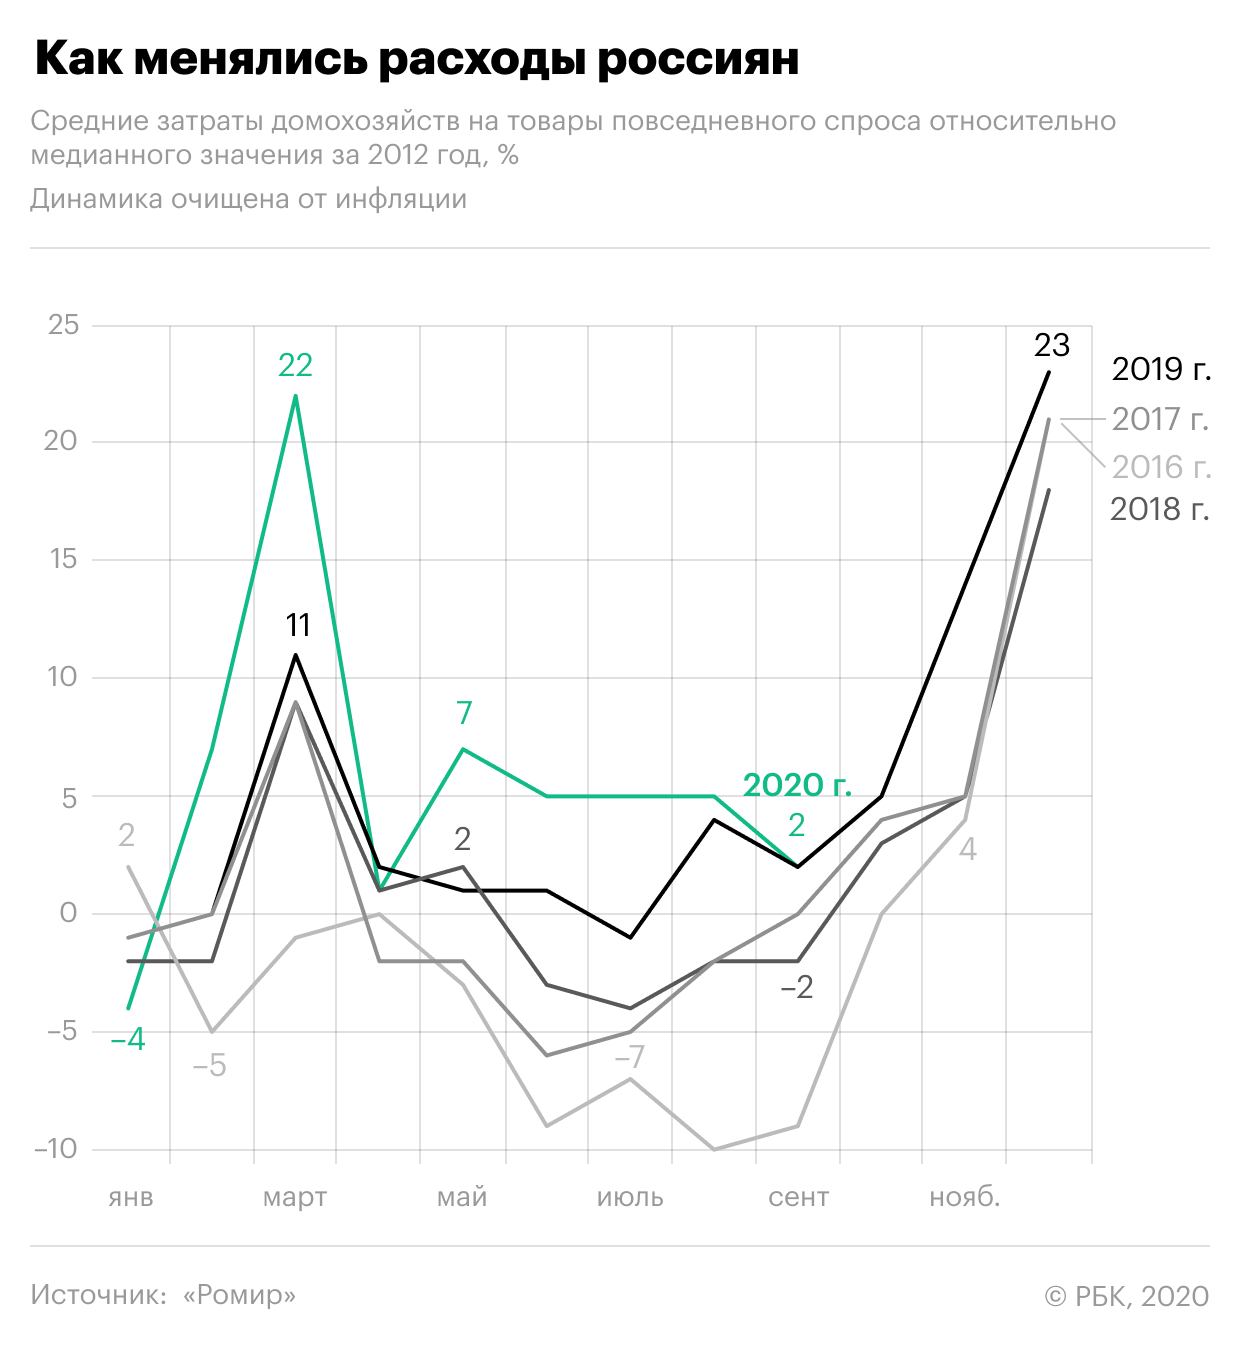 Социологи зафиксировали рекордный рост расходов россиян во время пандемии